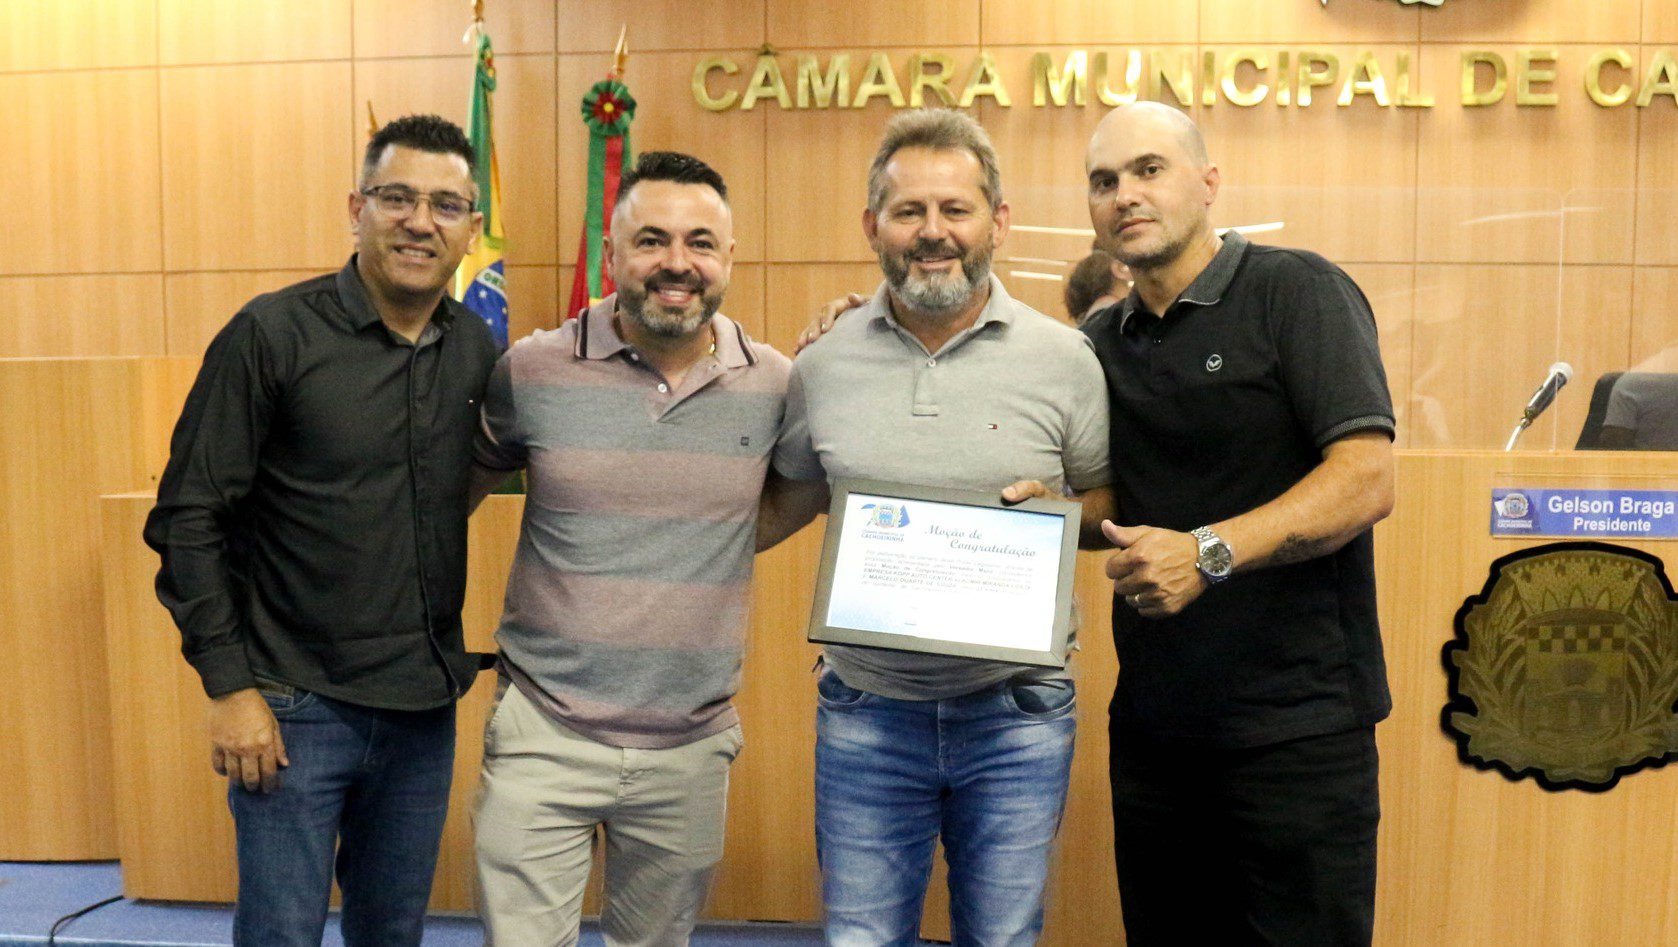 Atleta e empresários de Cachoeirinha são homenageados pela Câmara Municipal